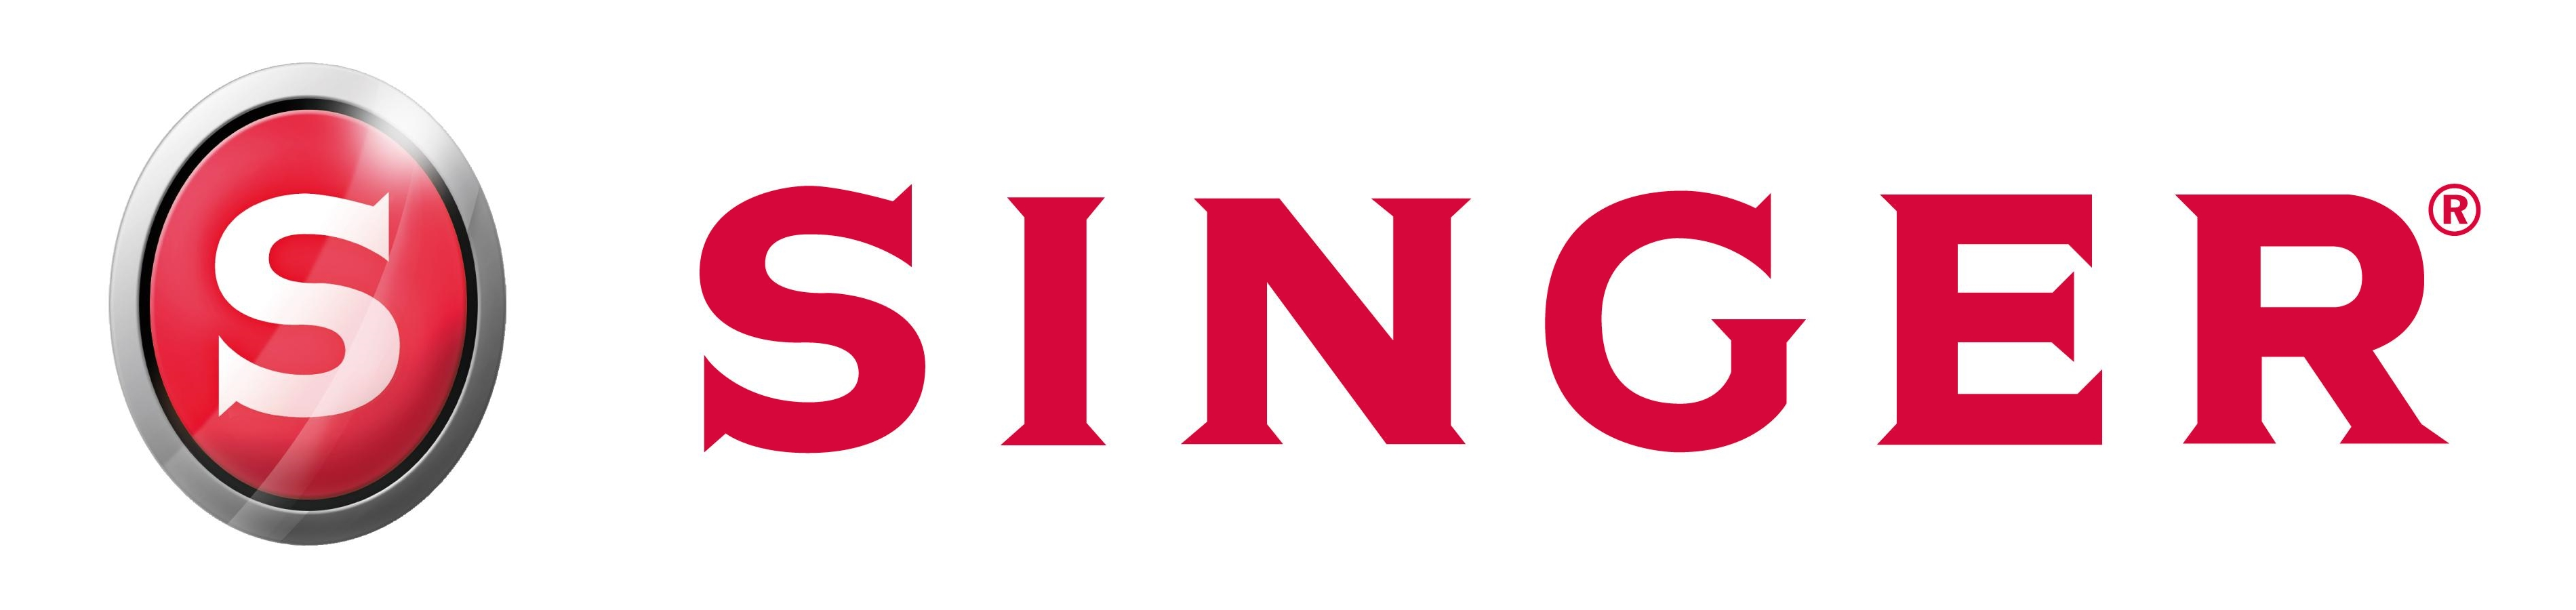 Singer Logo : valor, histria, png, vector